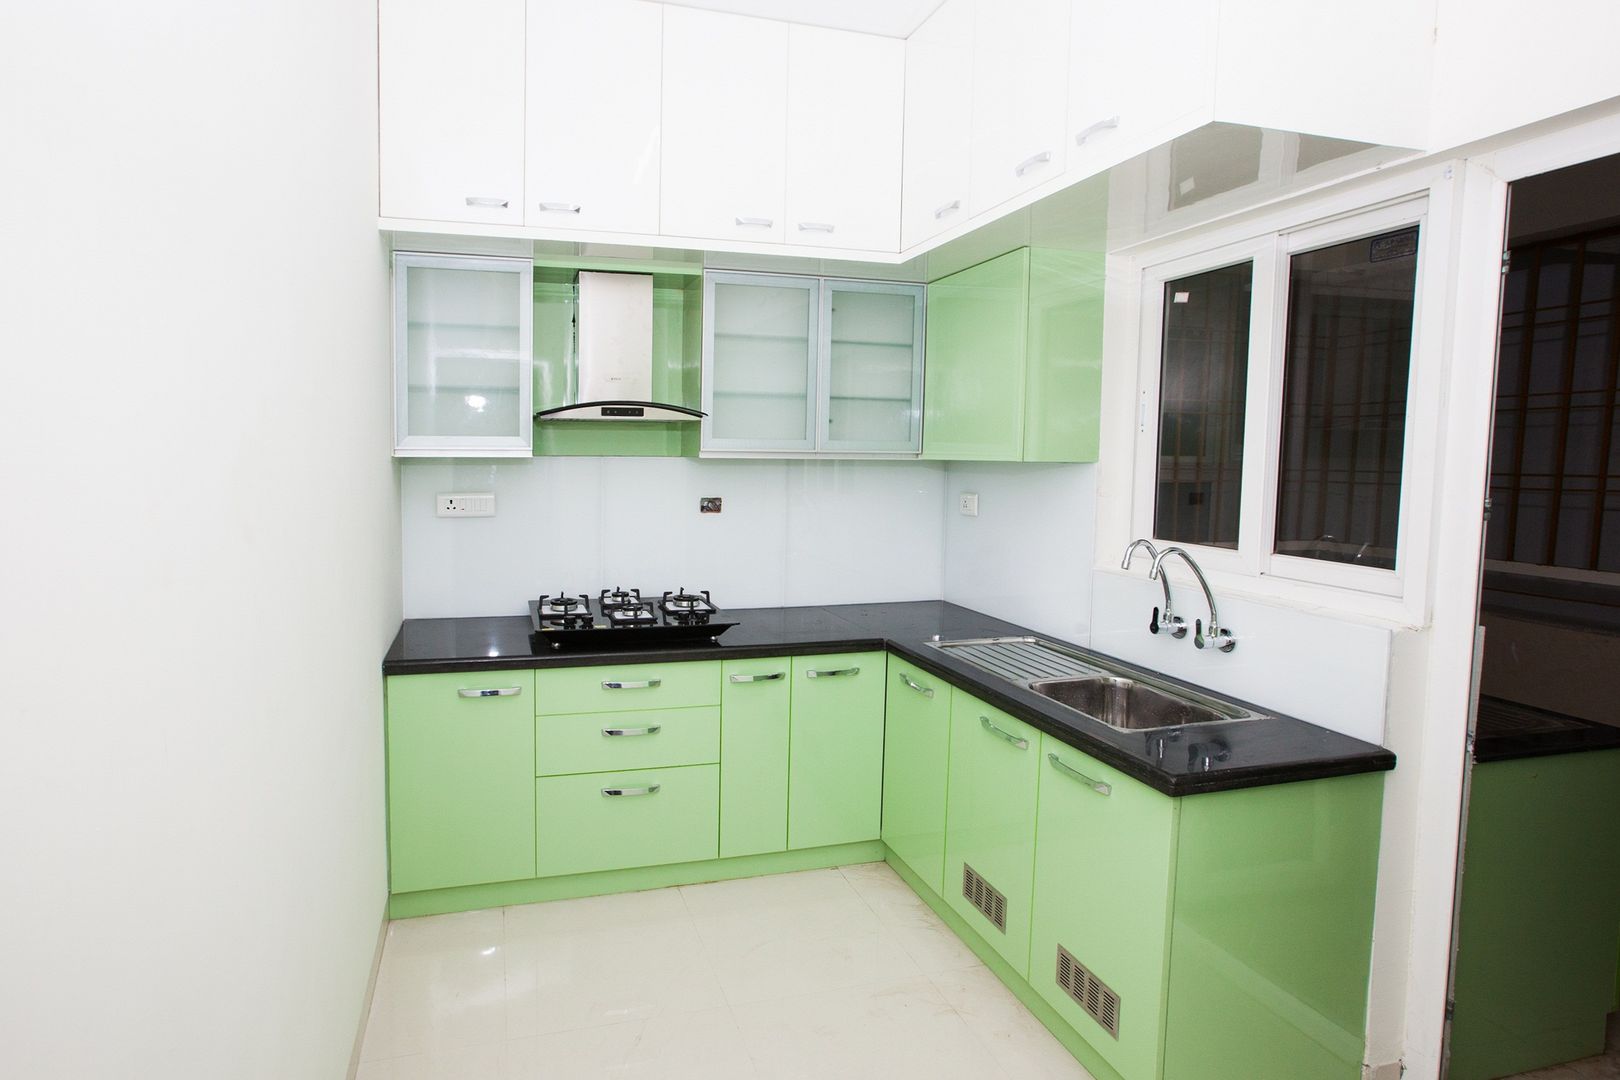 Kitchen with Lacquered Glass Backsplash Studio Ipsa Kitchen units